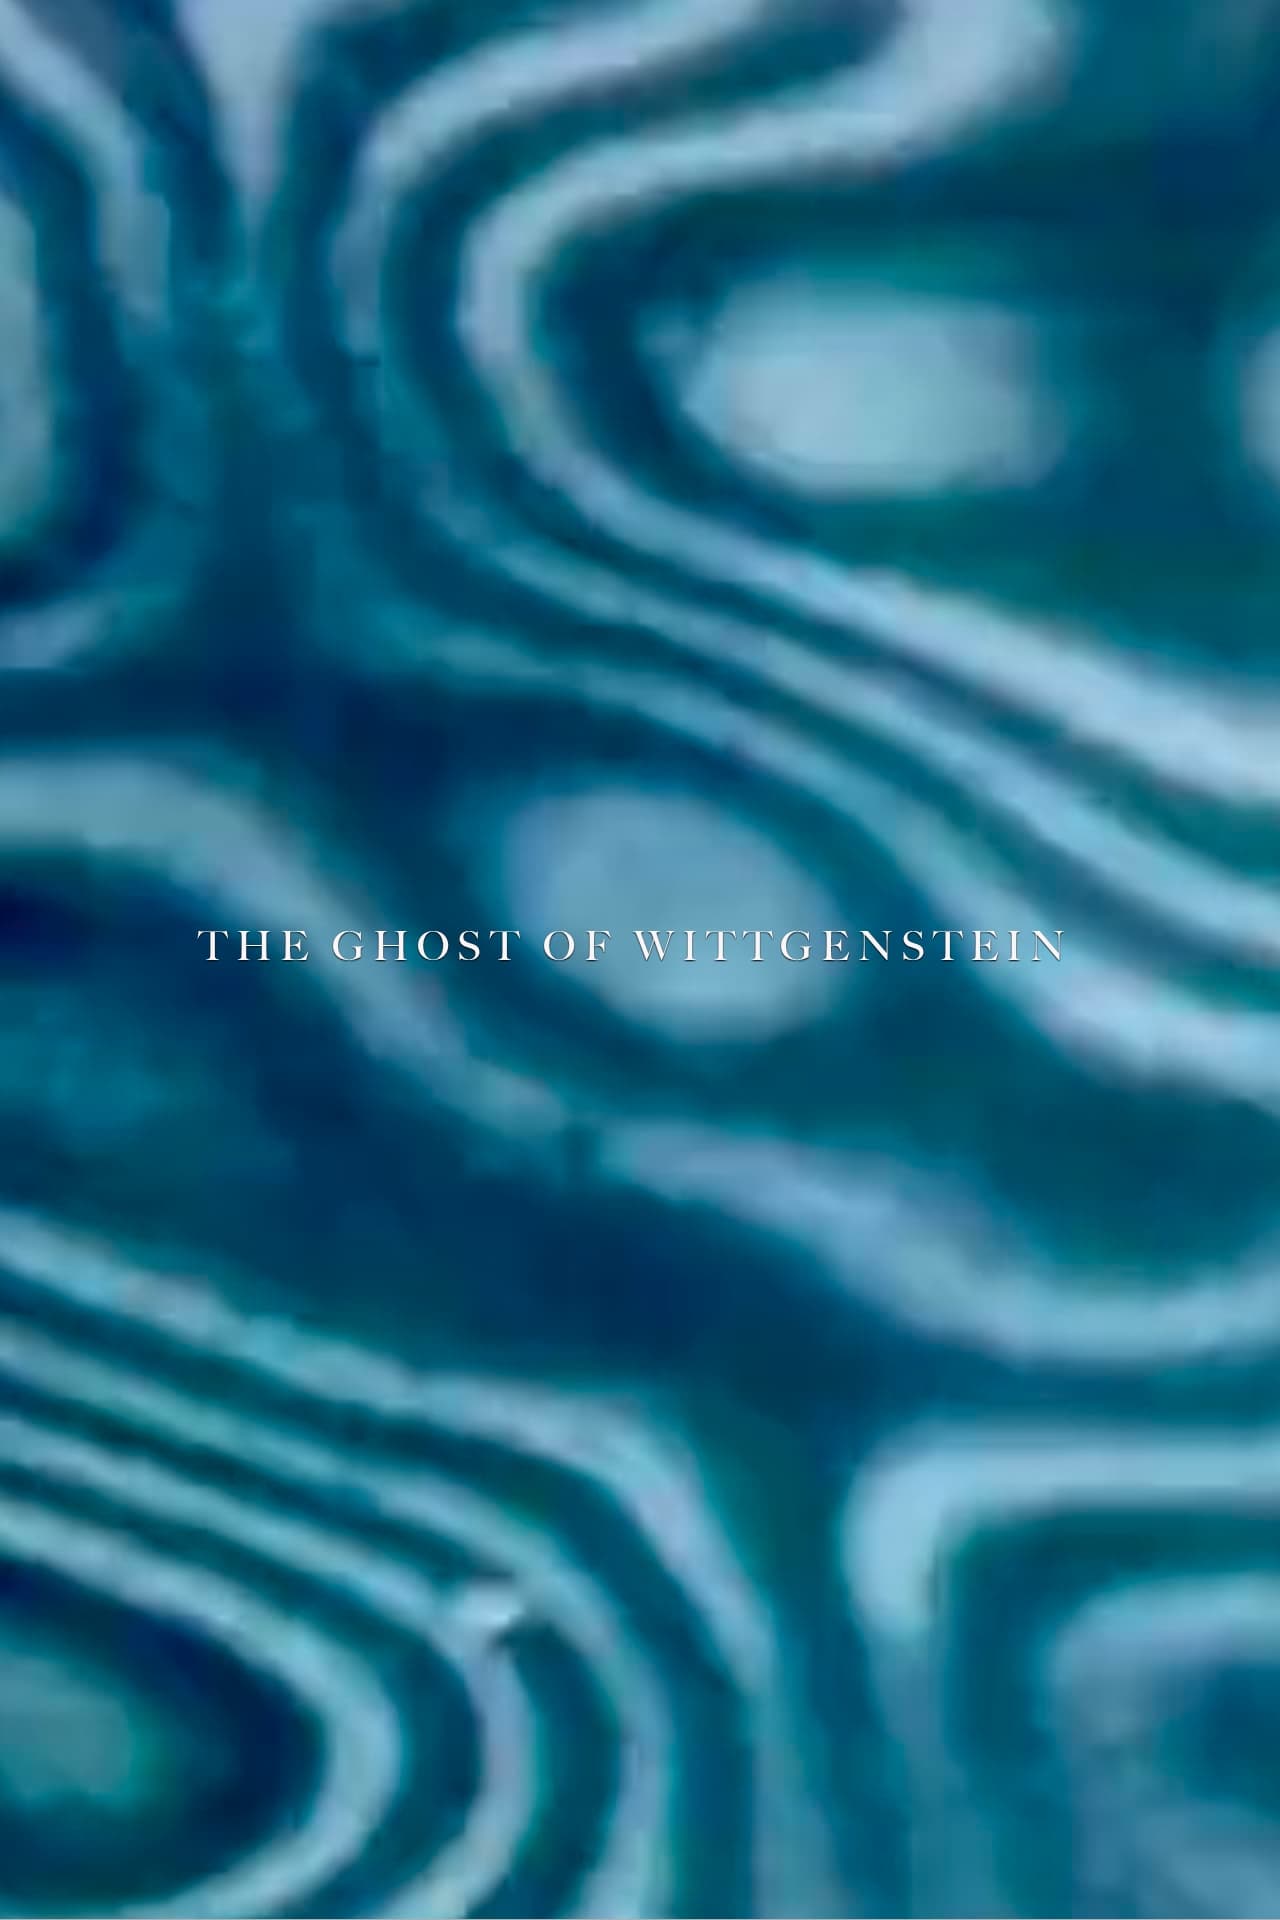 The Ghost of Wittgenstein